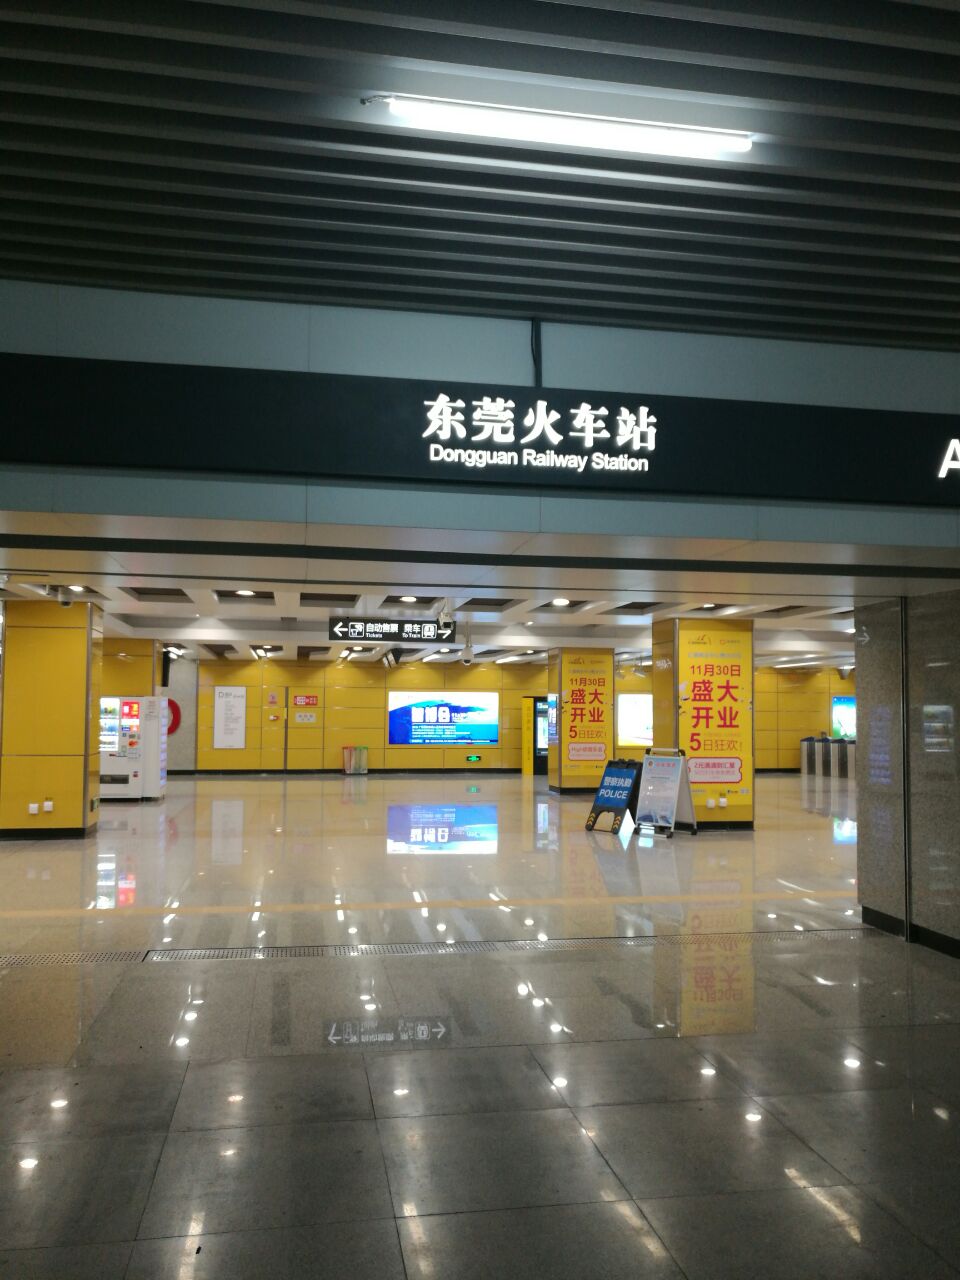 到的东莞站,太方便了,只需26分钟就可以抵达,这个火车站虽然不是很大